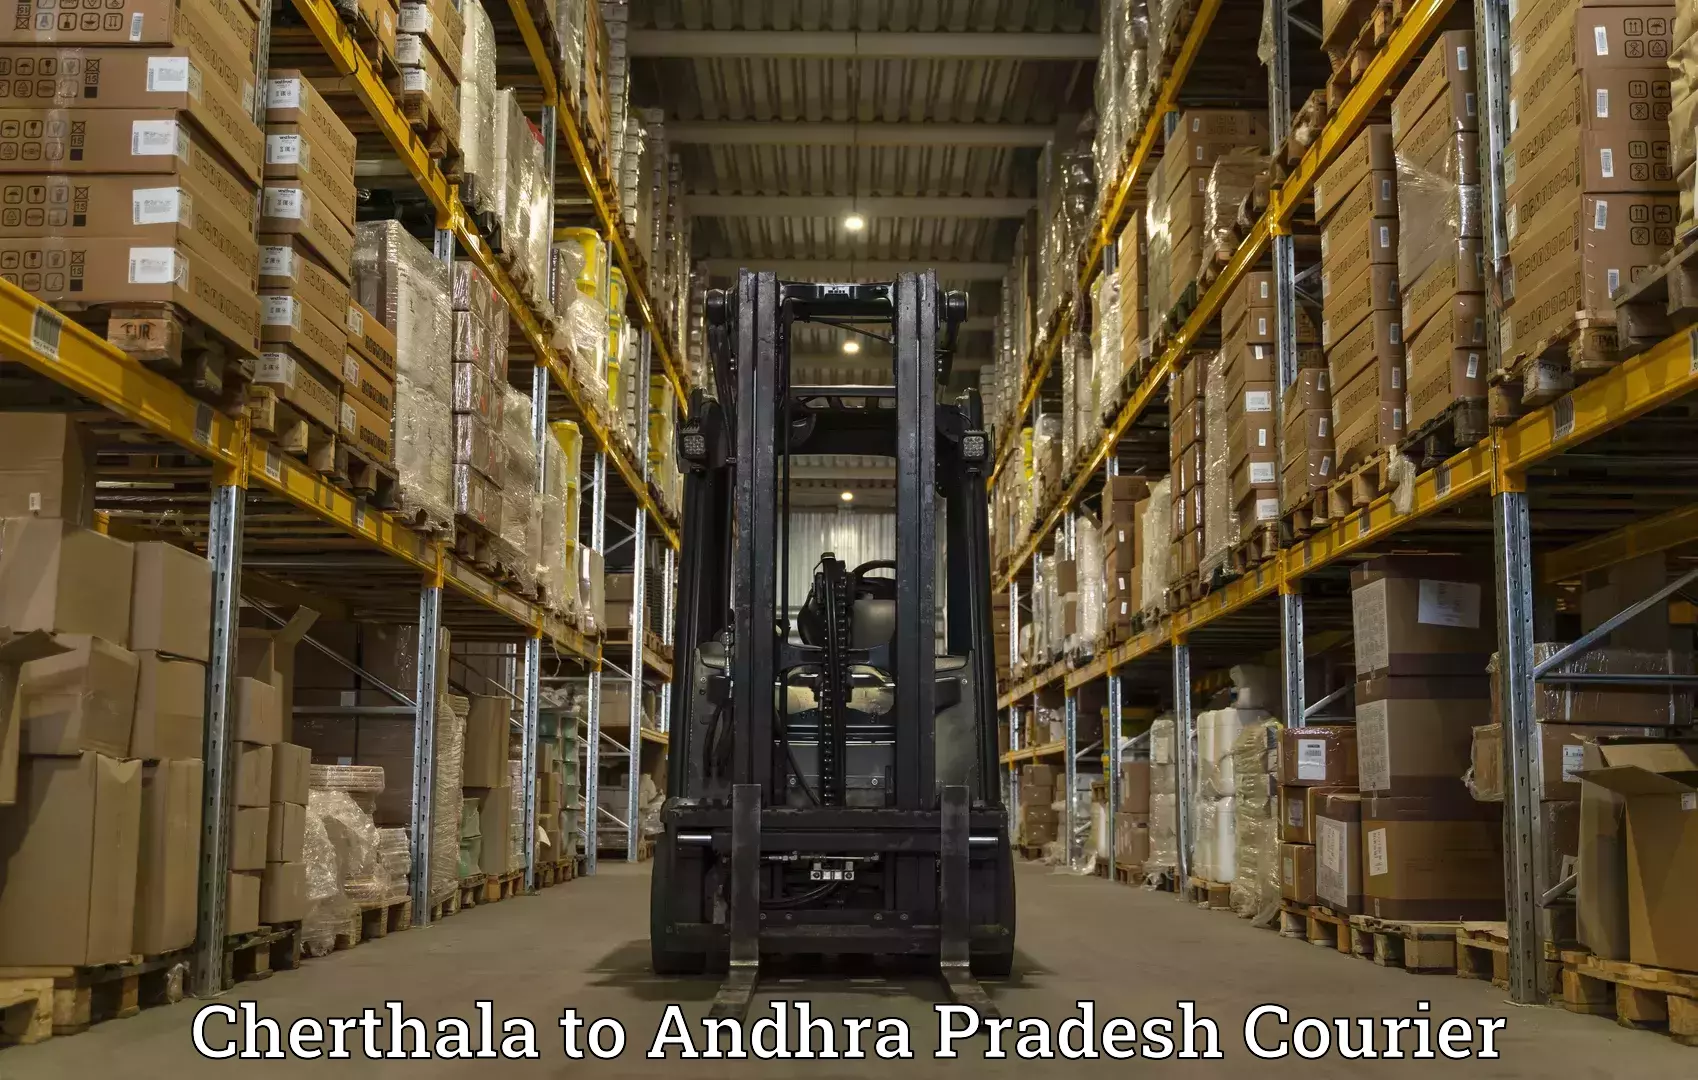 Modern delivery technologies Cherthala to Yerravaram